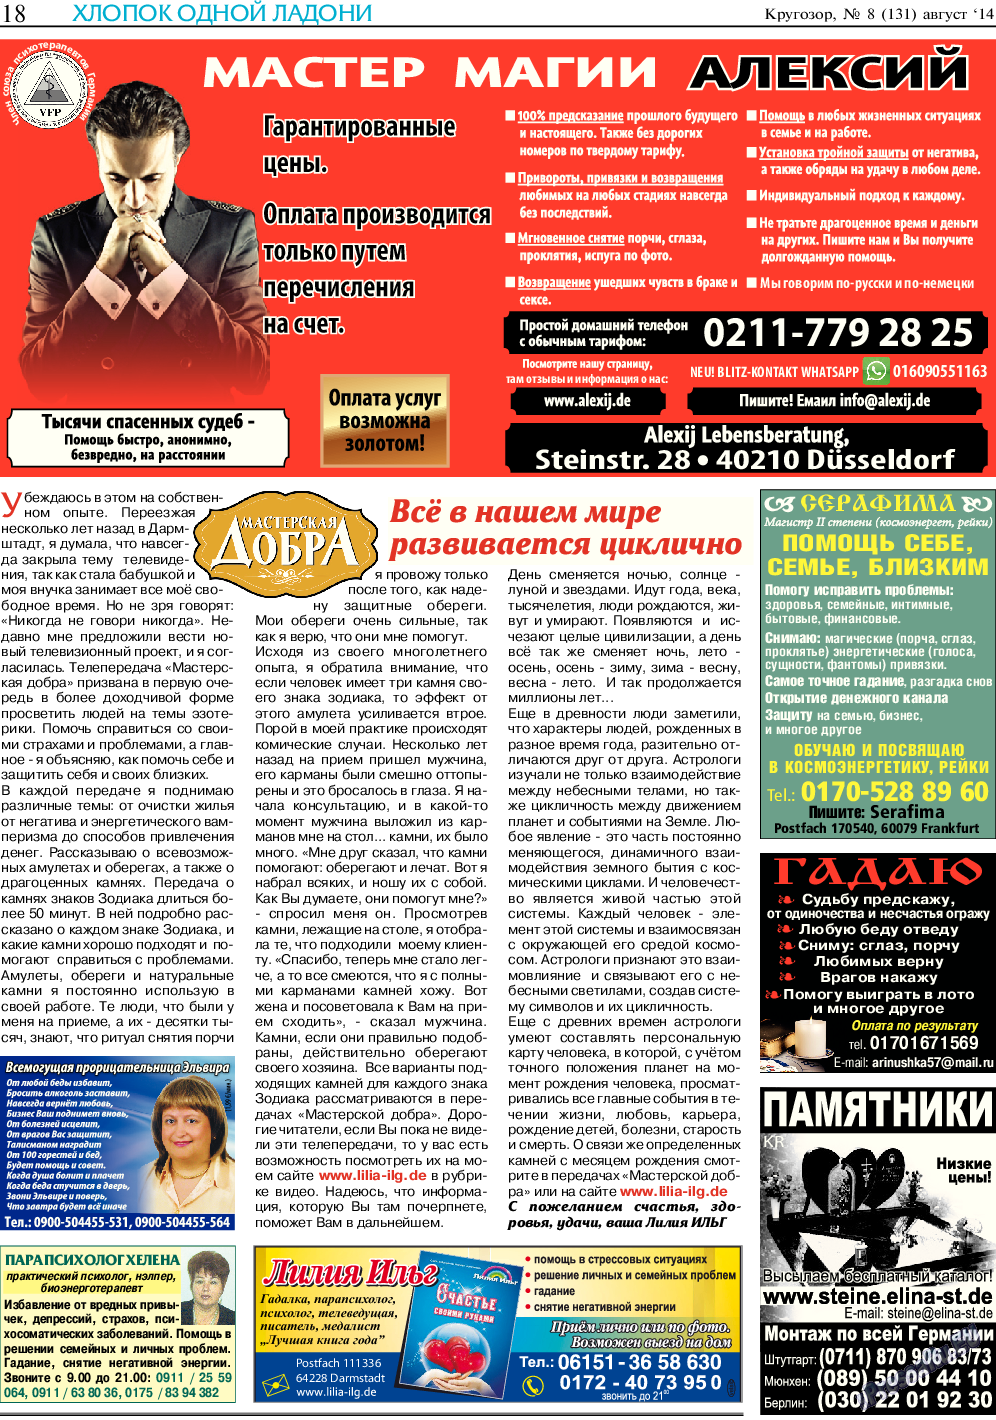 Кругозор, газета. 2014 №8 стр.18